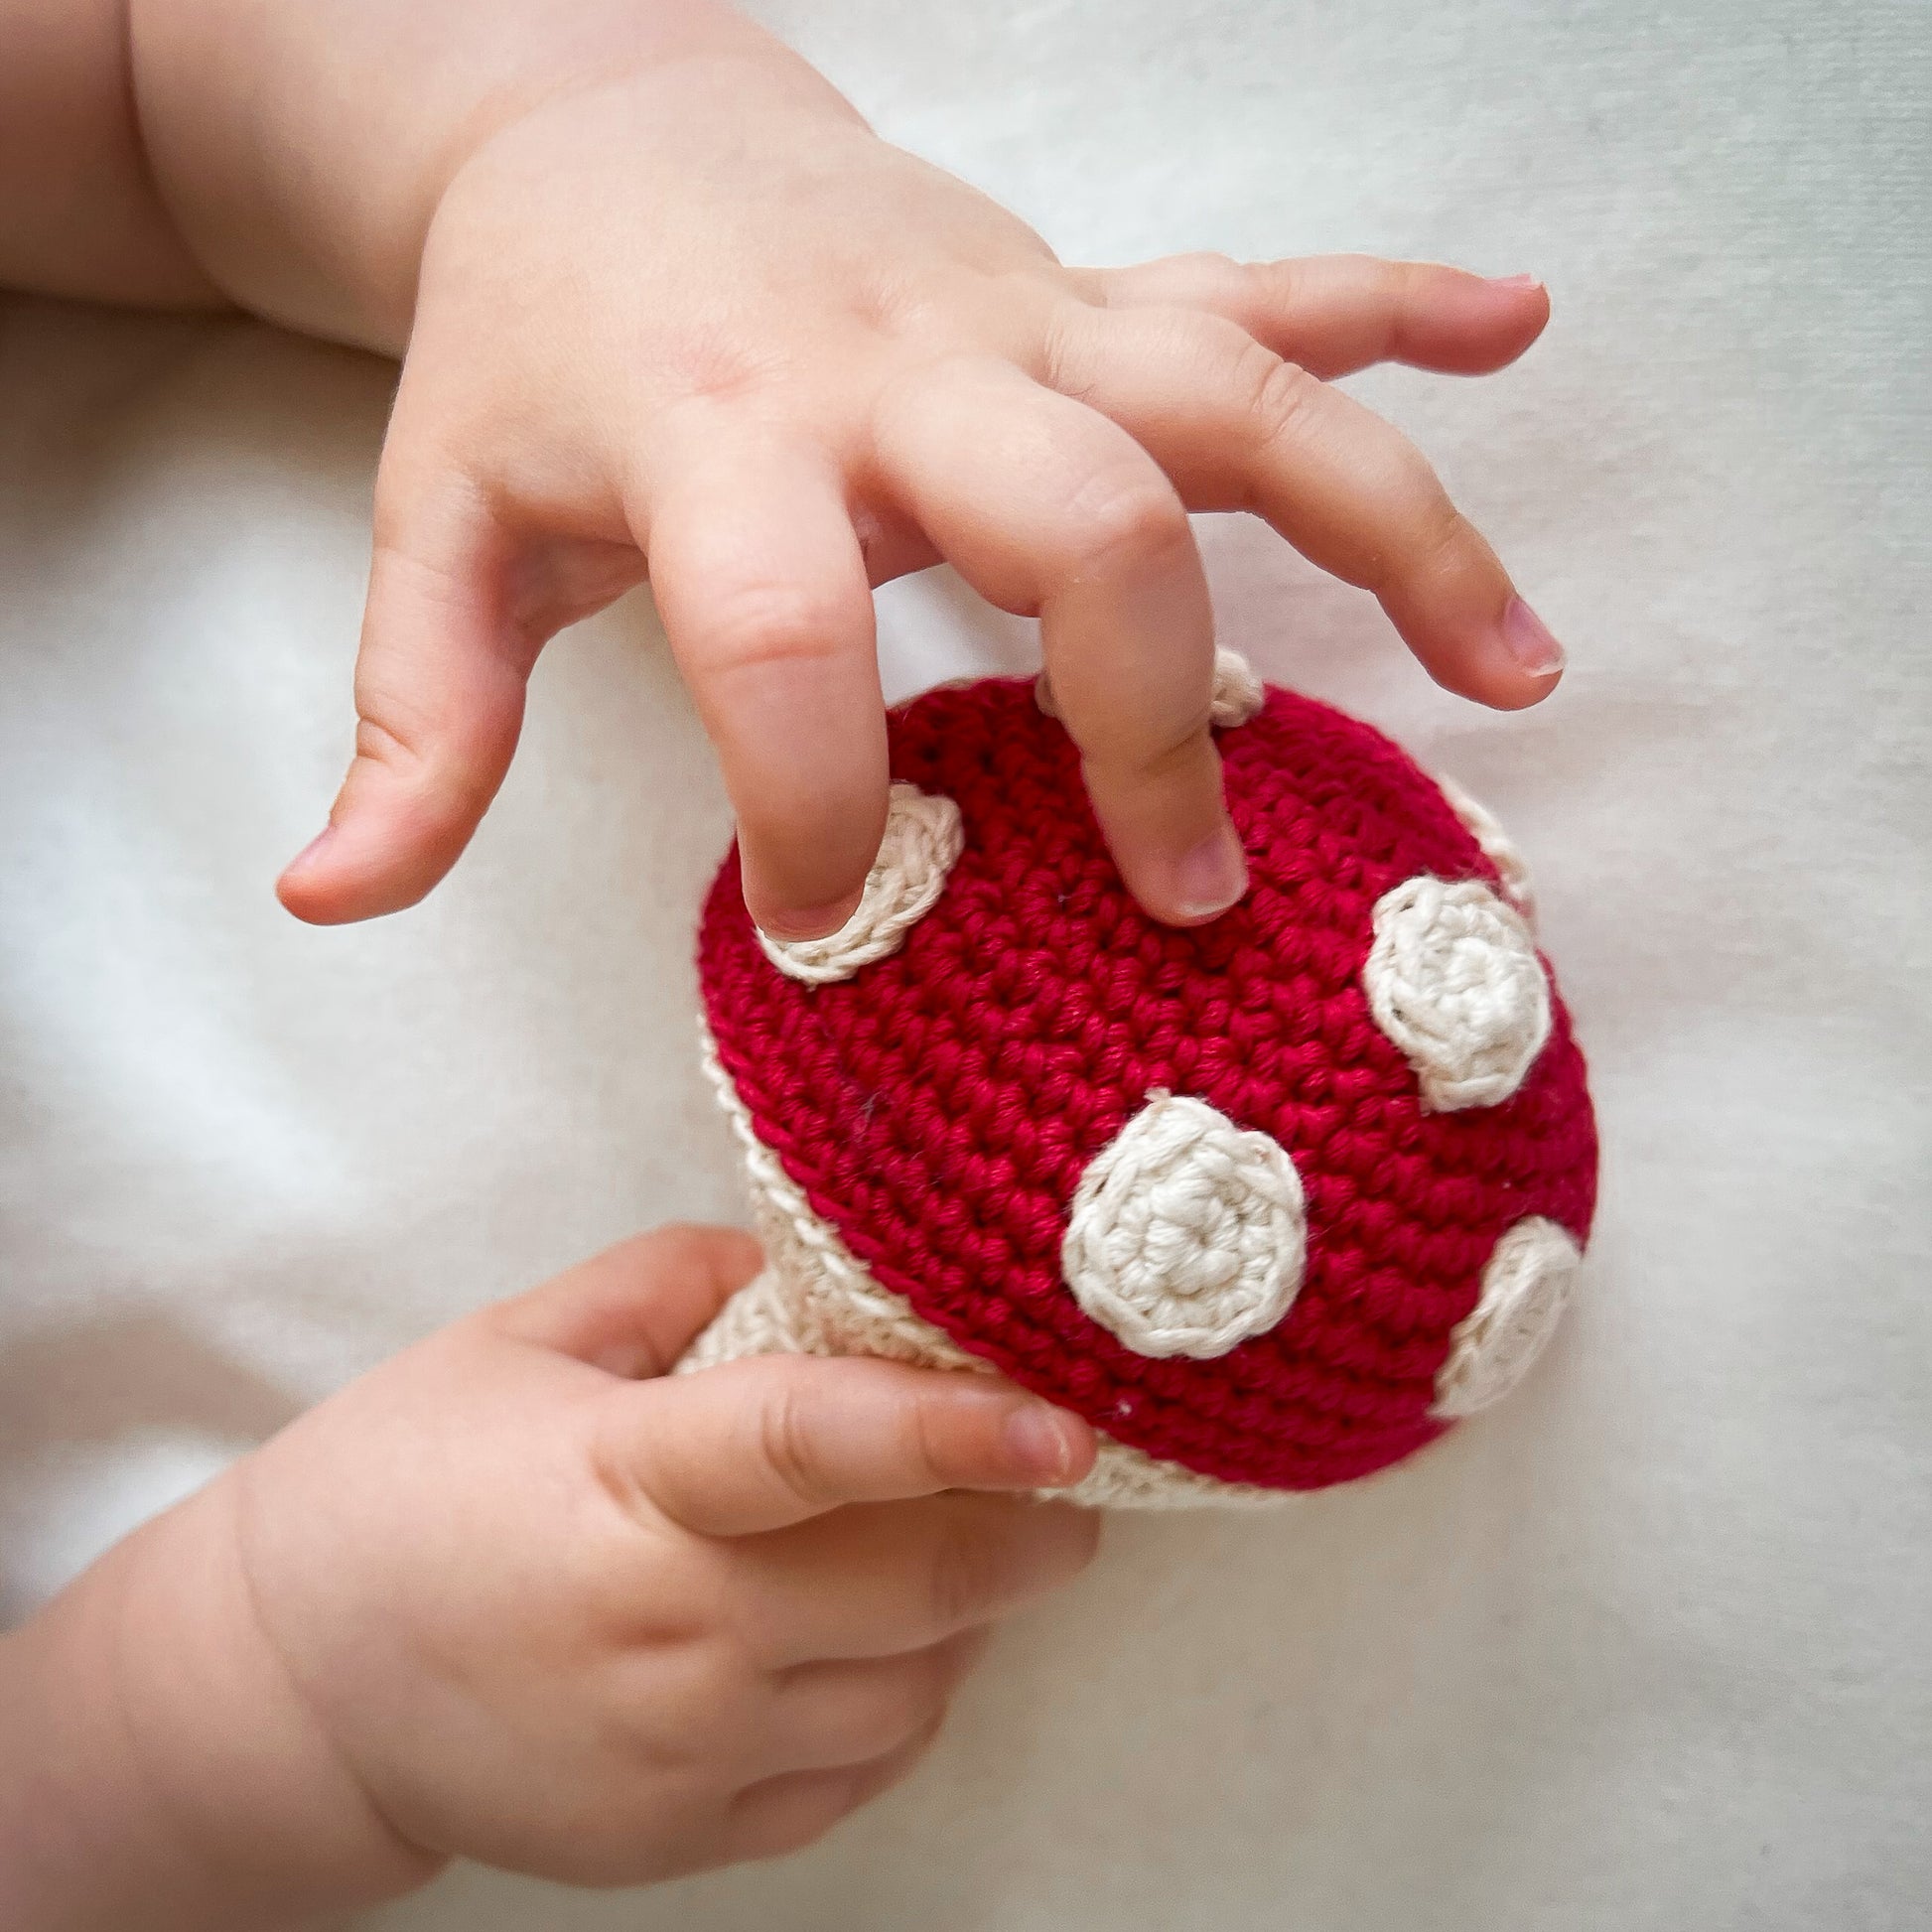 Hochet Champignon pour bébé en crochet en coton bio fait main avec petit grelot. Hauteur 14cm, couleur rouge et pois blancs